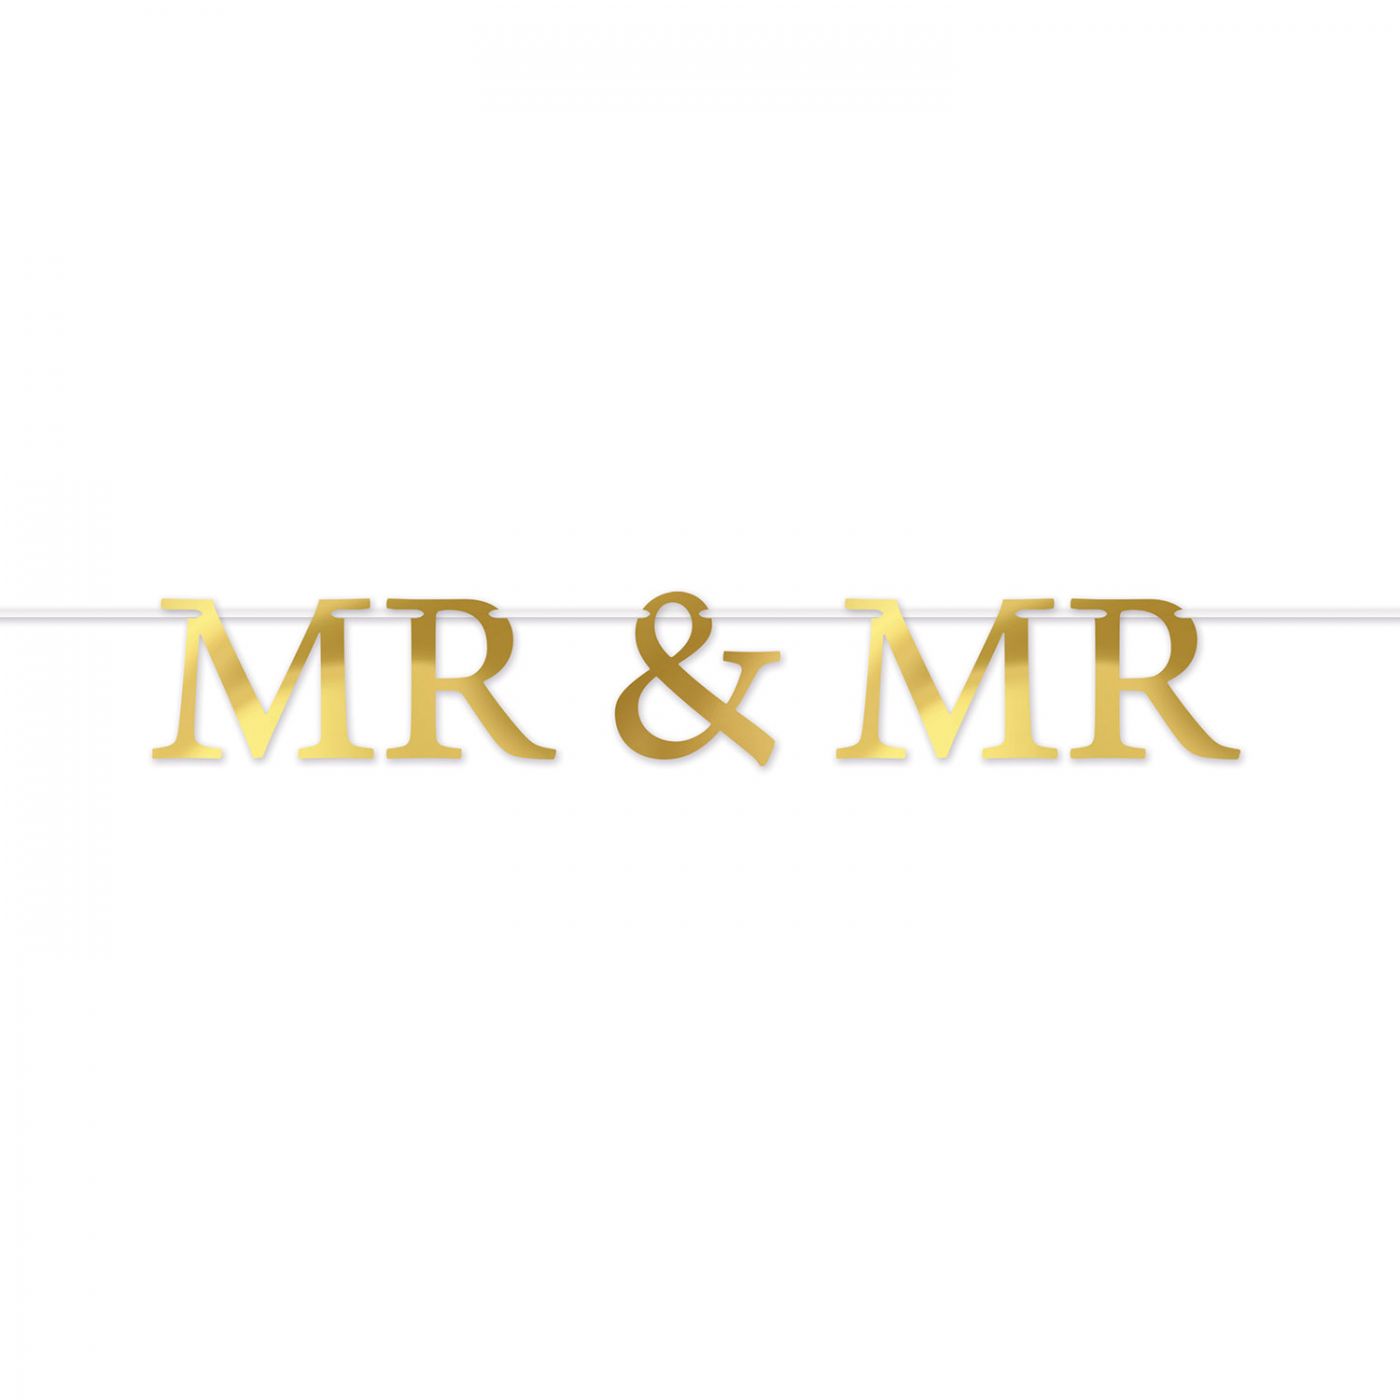 Foil Mr & Mr Streamer image